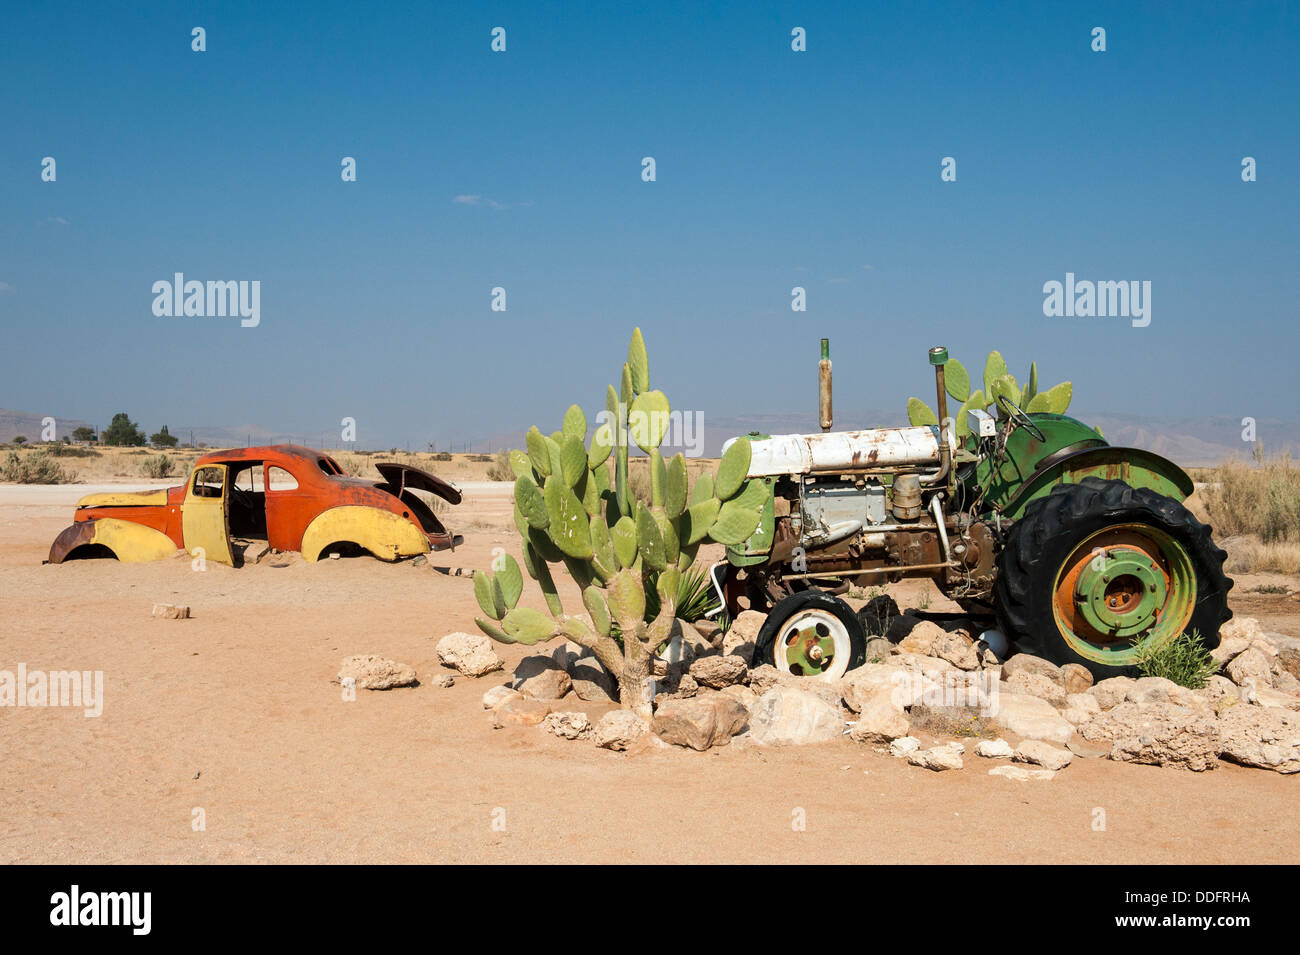 Coches y tractores naufragio en solitario, región de Khomas, Namibia Foto de stock